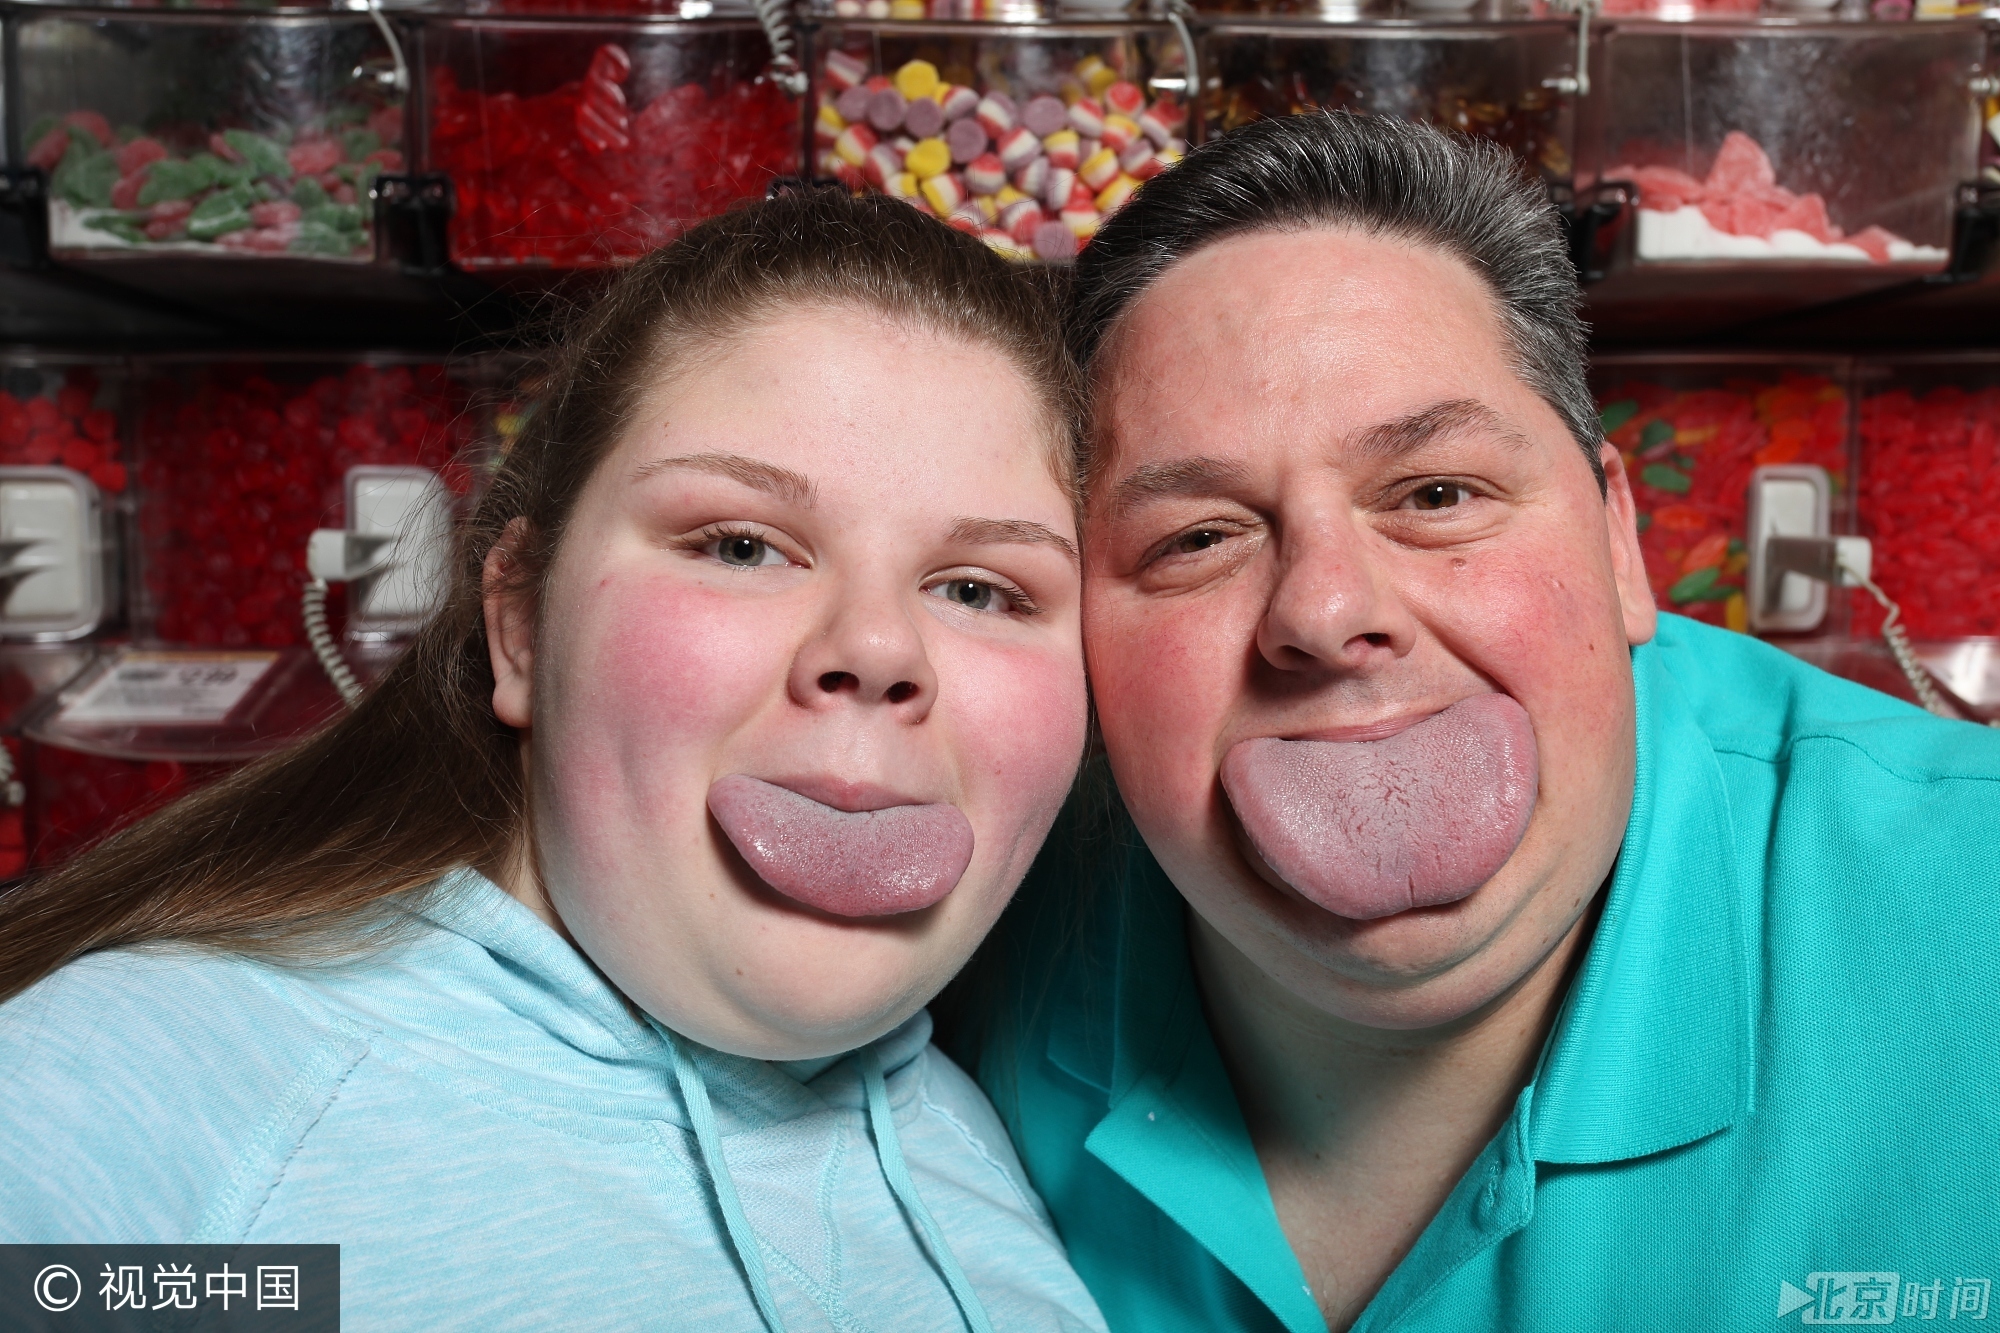 2015年，美国47岁男子拜伦·施伦克尔拥有世界上最宽的舌头，宽达8.3厘米，打破了之前7.9厘米的吉尼斯纪录，他的女儿也不甘示弱舌宽达到7.3厘米。